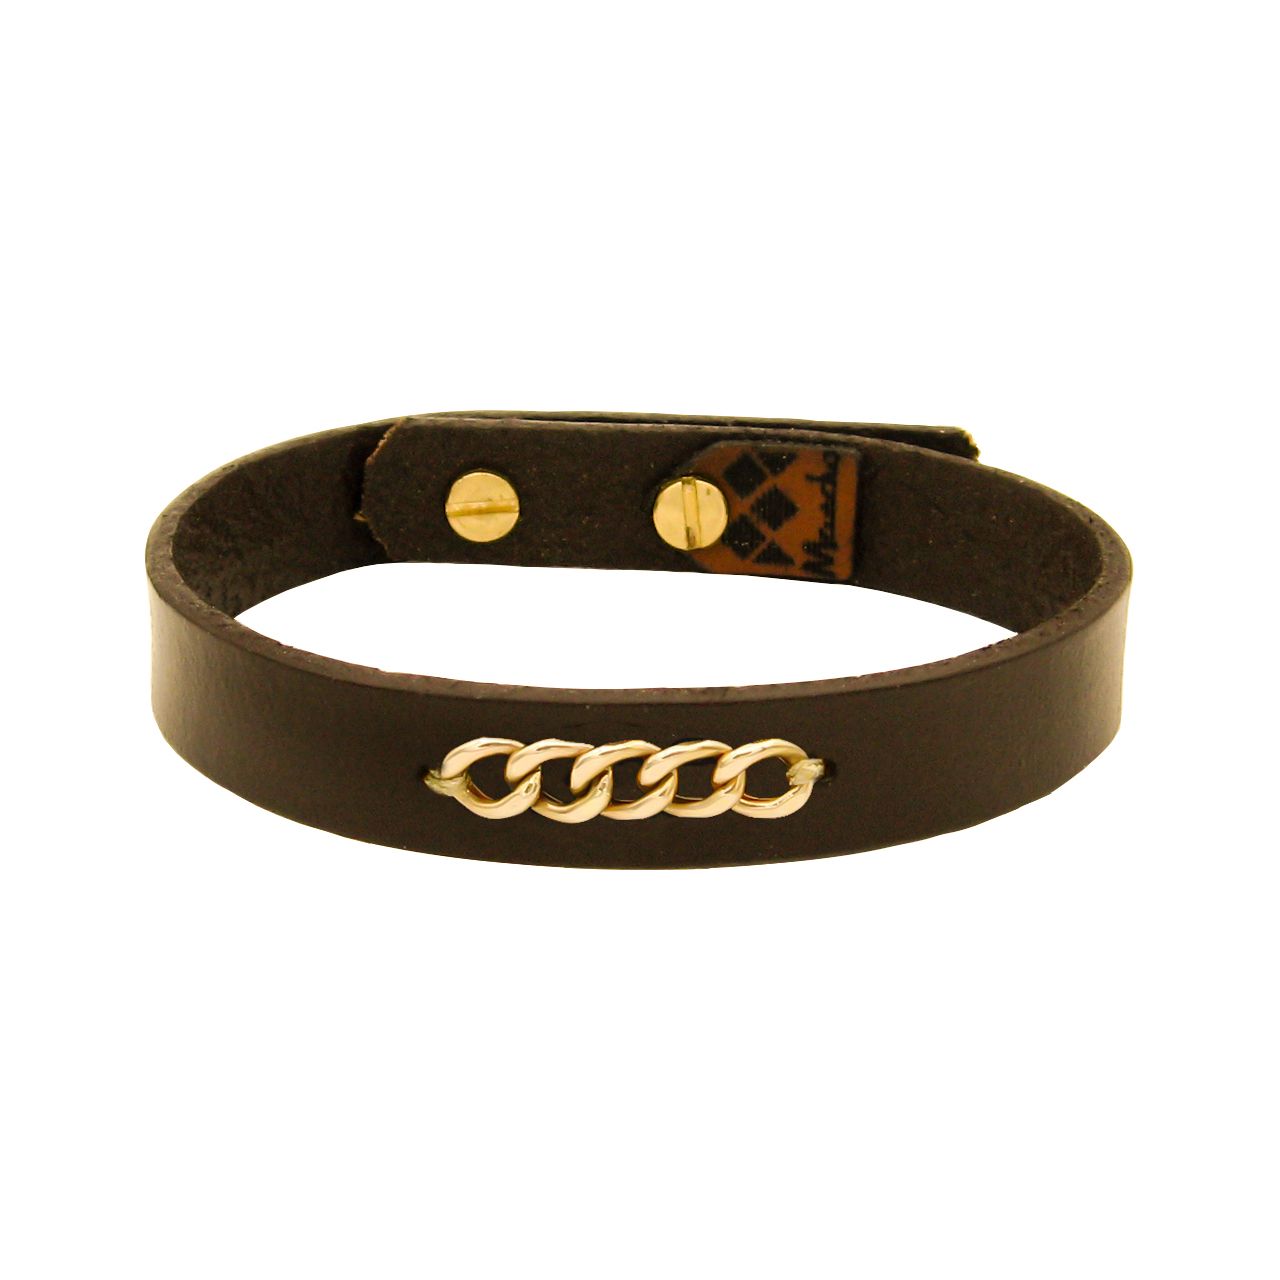  دستبند چرم و طلا 18 عیار مردانه مانچو مدل bfg245 -  - 2